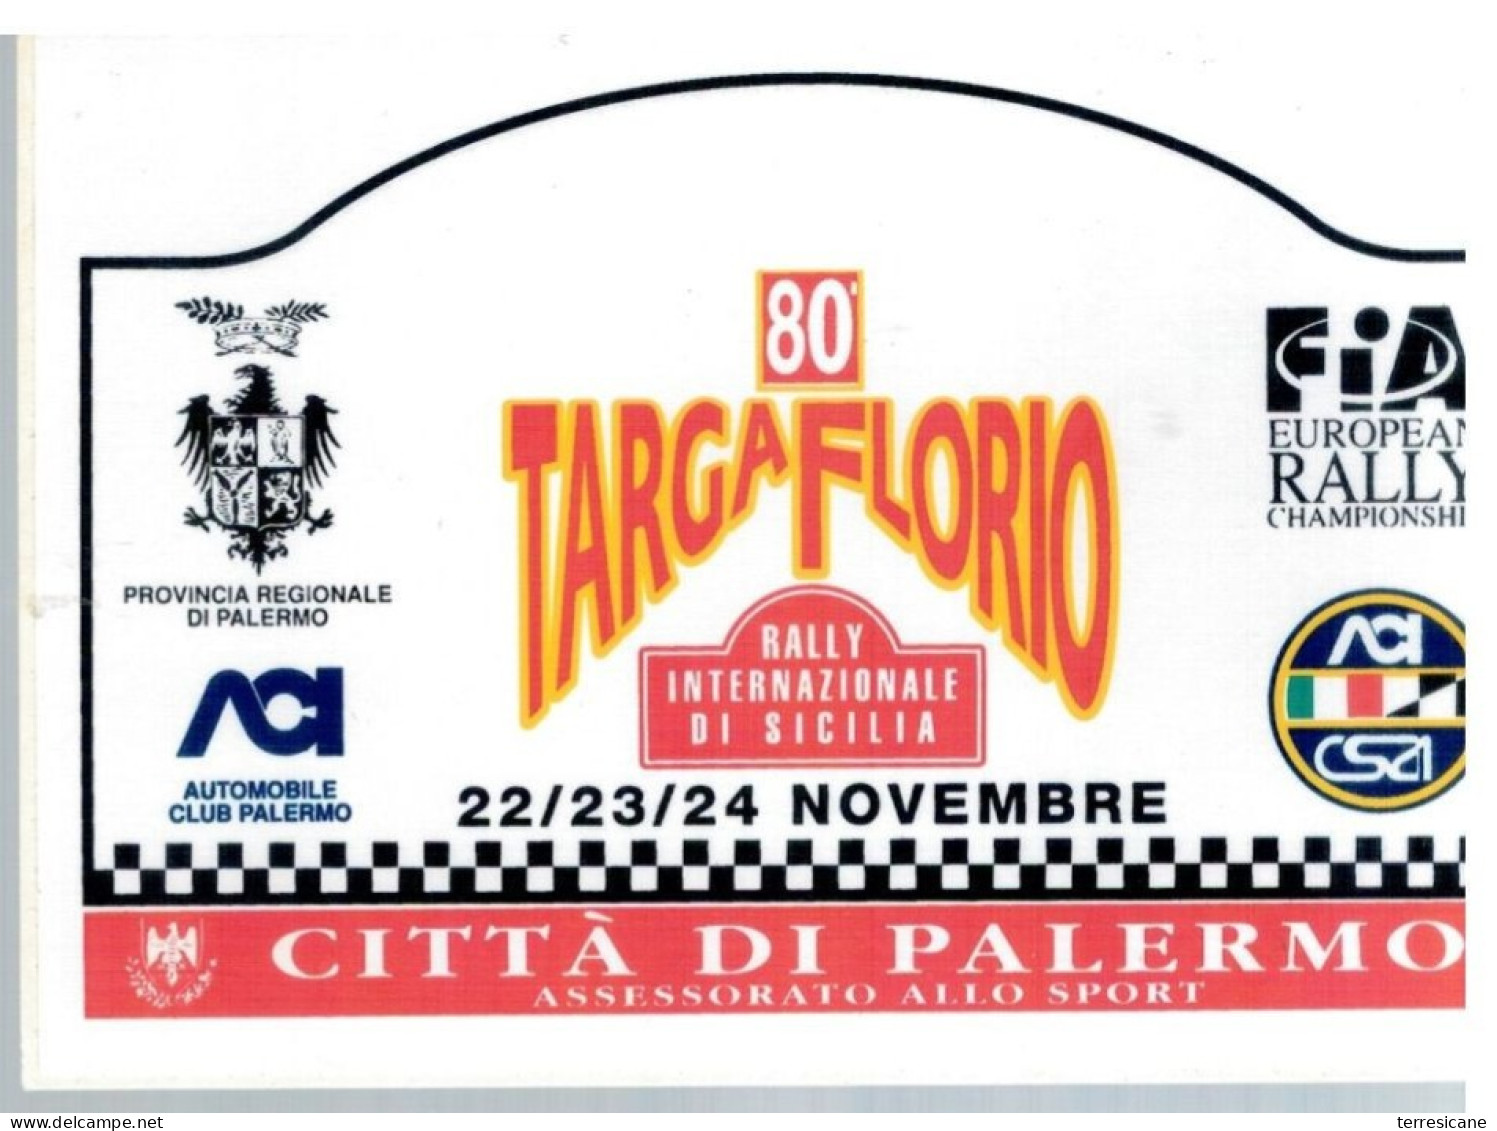 80 TARGA FLORIO 95 RALLY INTERNAZIONALE Placca Adesiva - Automobile - F1